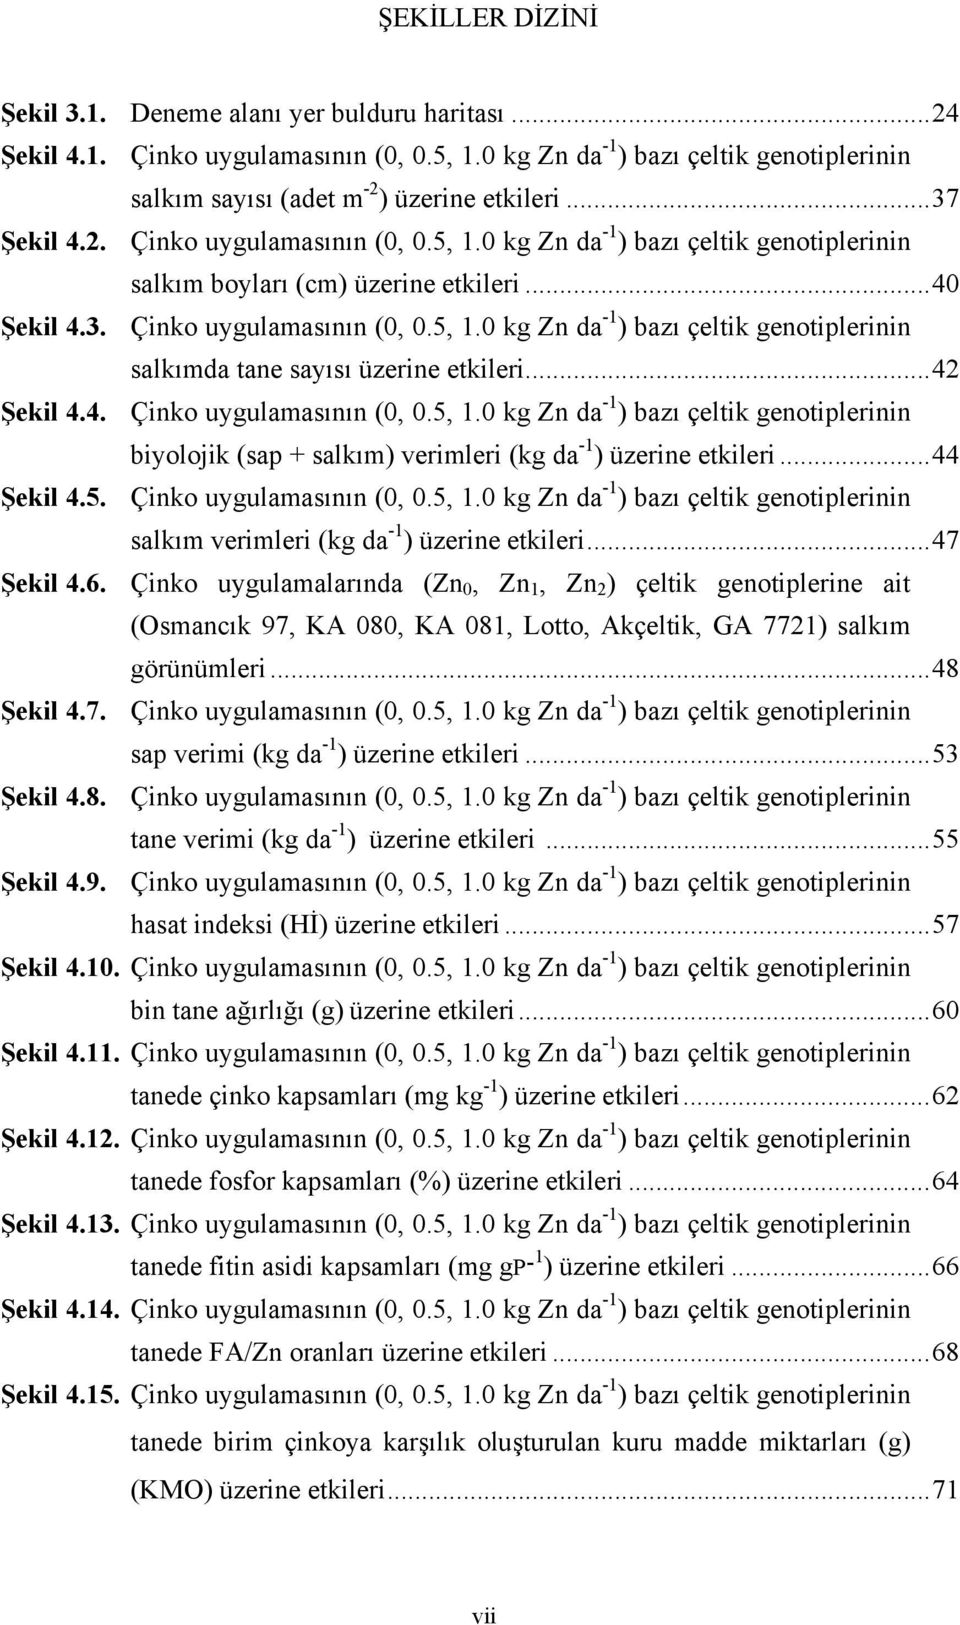 ..42 Şekil 4.4. Çinko uygulamasının (0, 0.5, 1.0 kg Zn da -1 ) bazı çeltik genotiplerinin biyolojik (sap + salkım) verimleri (kg da -1 ) üzerine etkileri...44 Şekil 4.5. Çinko uygulamasının (0, 0.5, 1.0 kg Zn da -1 ) bazı çeltik genotiplerinin salkım verimleri (kg da -1 ) üzerine etkileri.